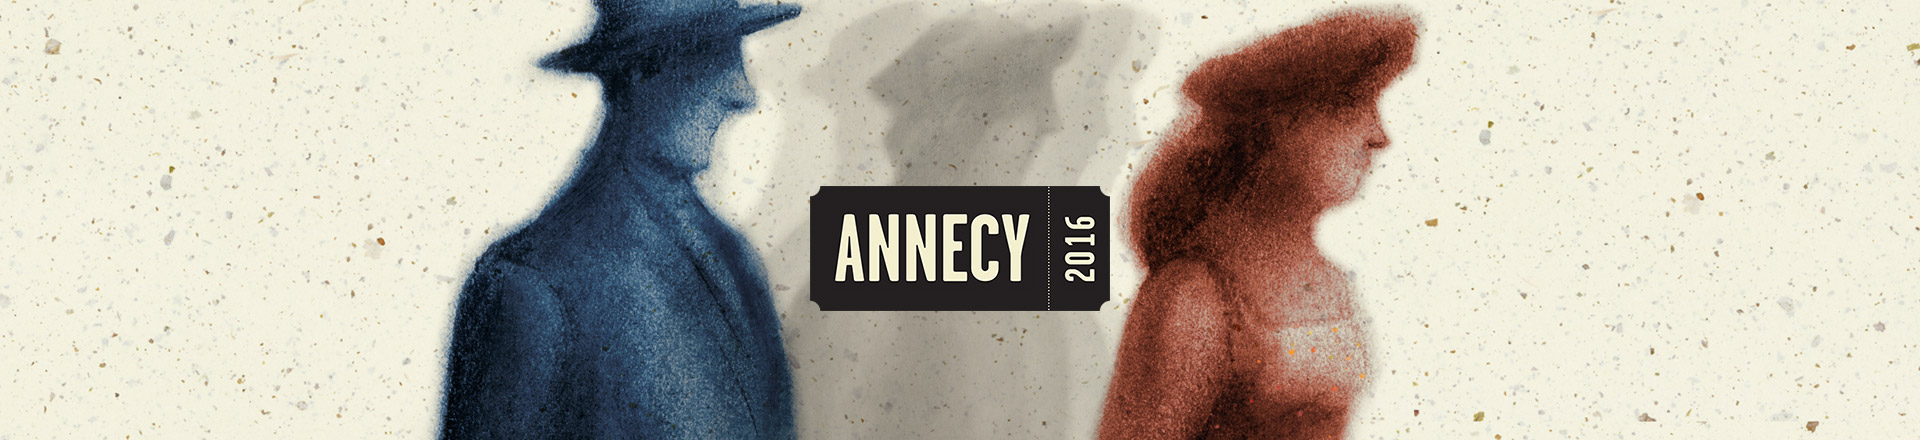 annecy 2016 header